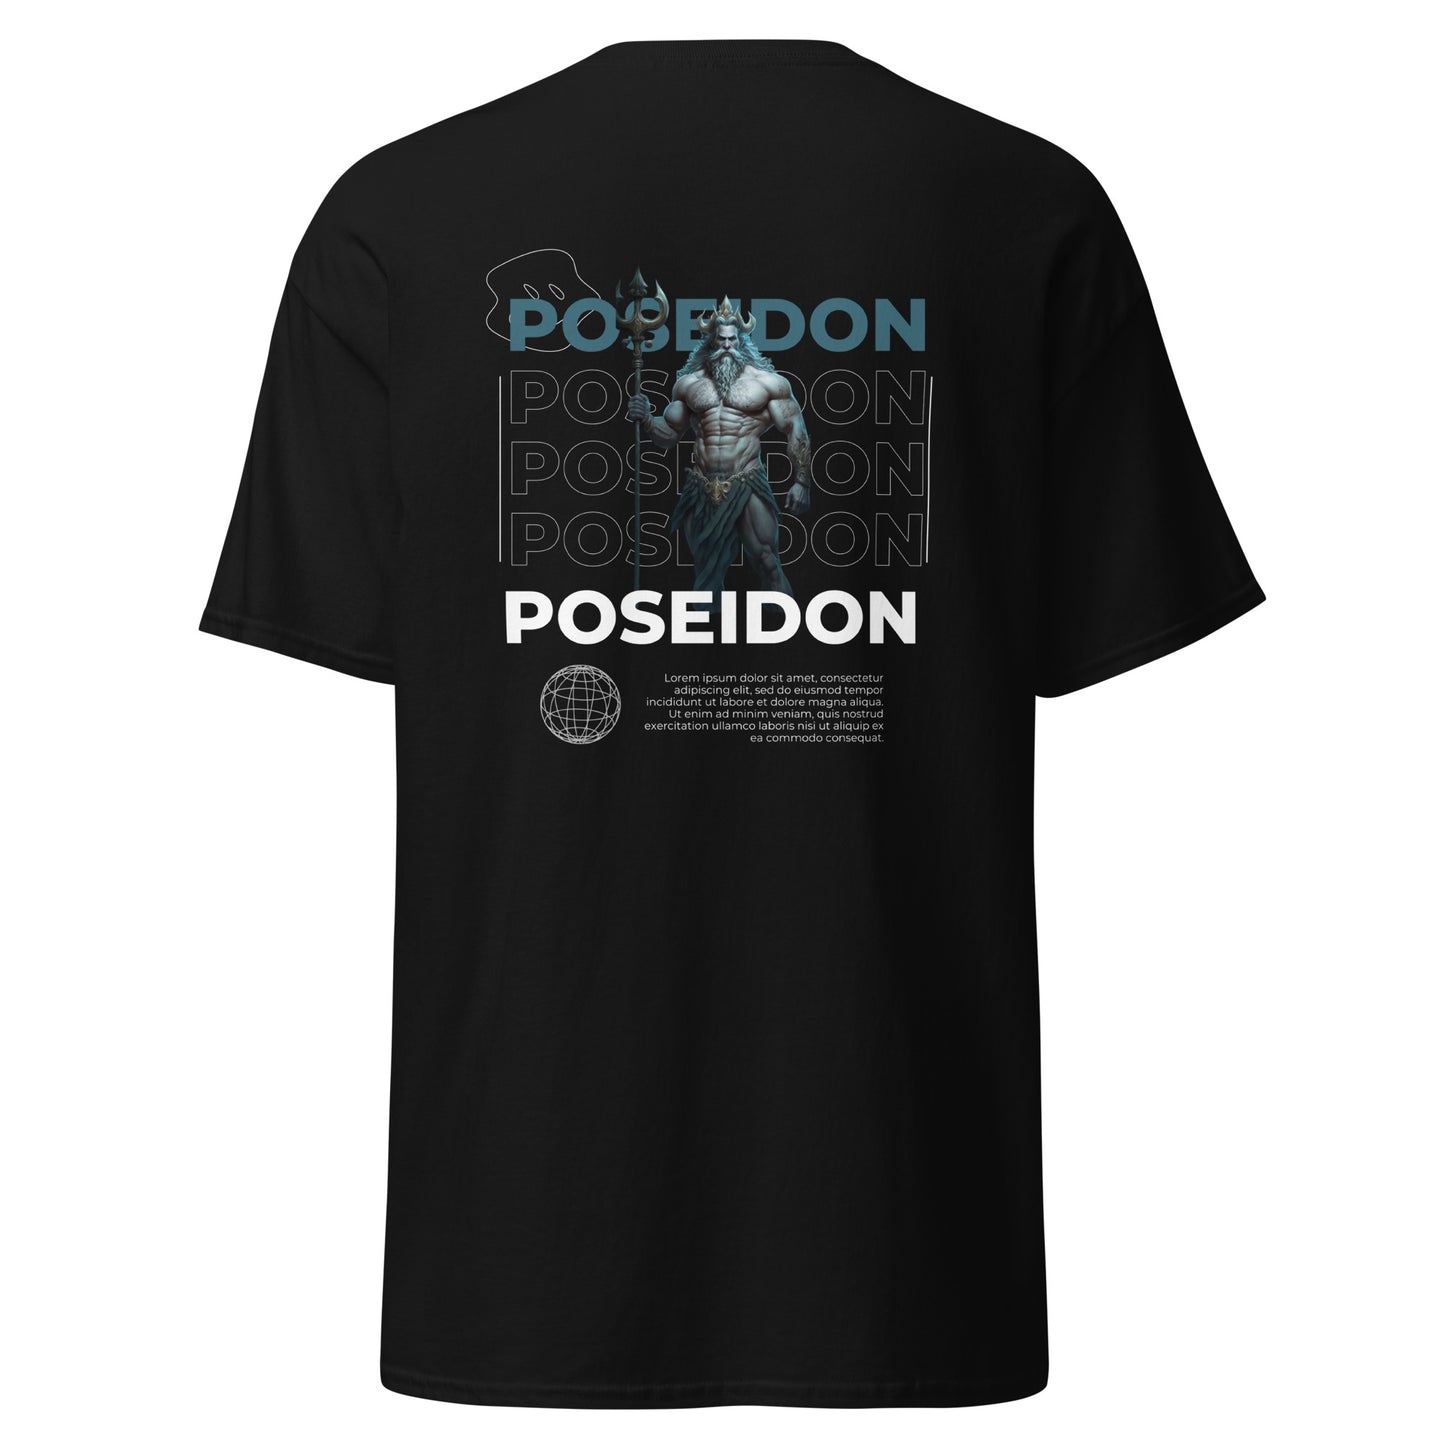 DoubleB ™ - Poseidon